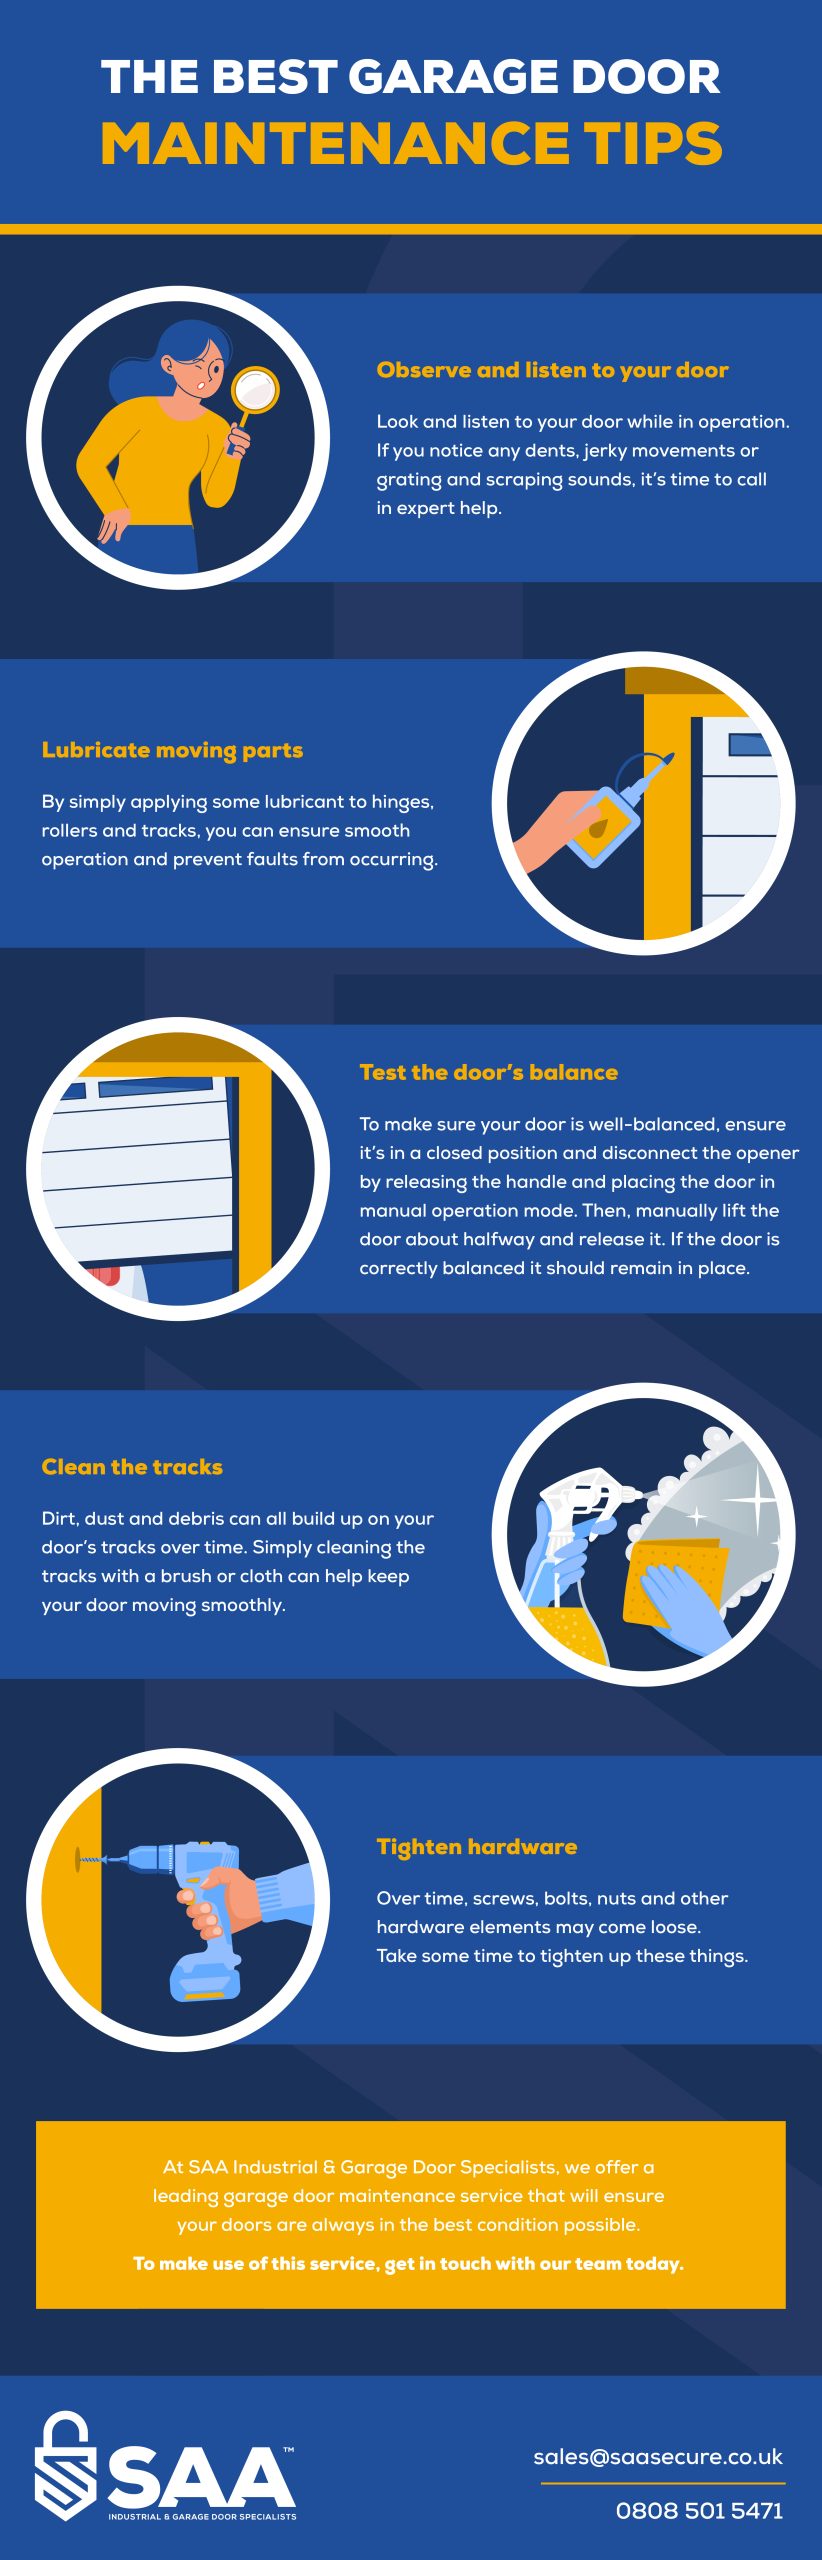 The best garage door maintenance tips infographic